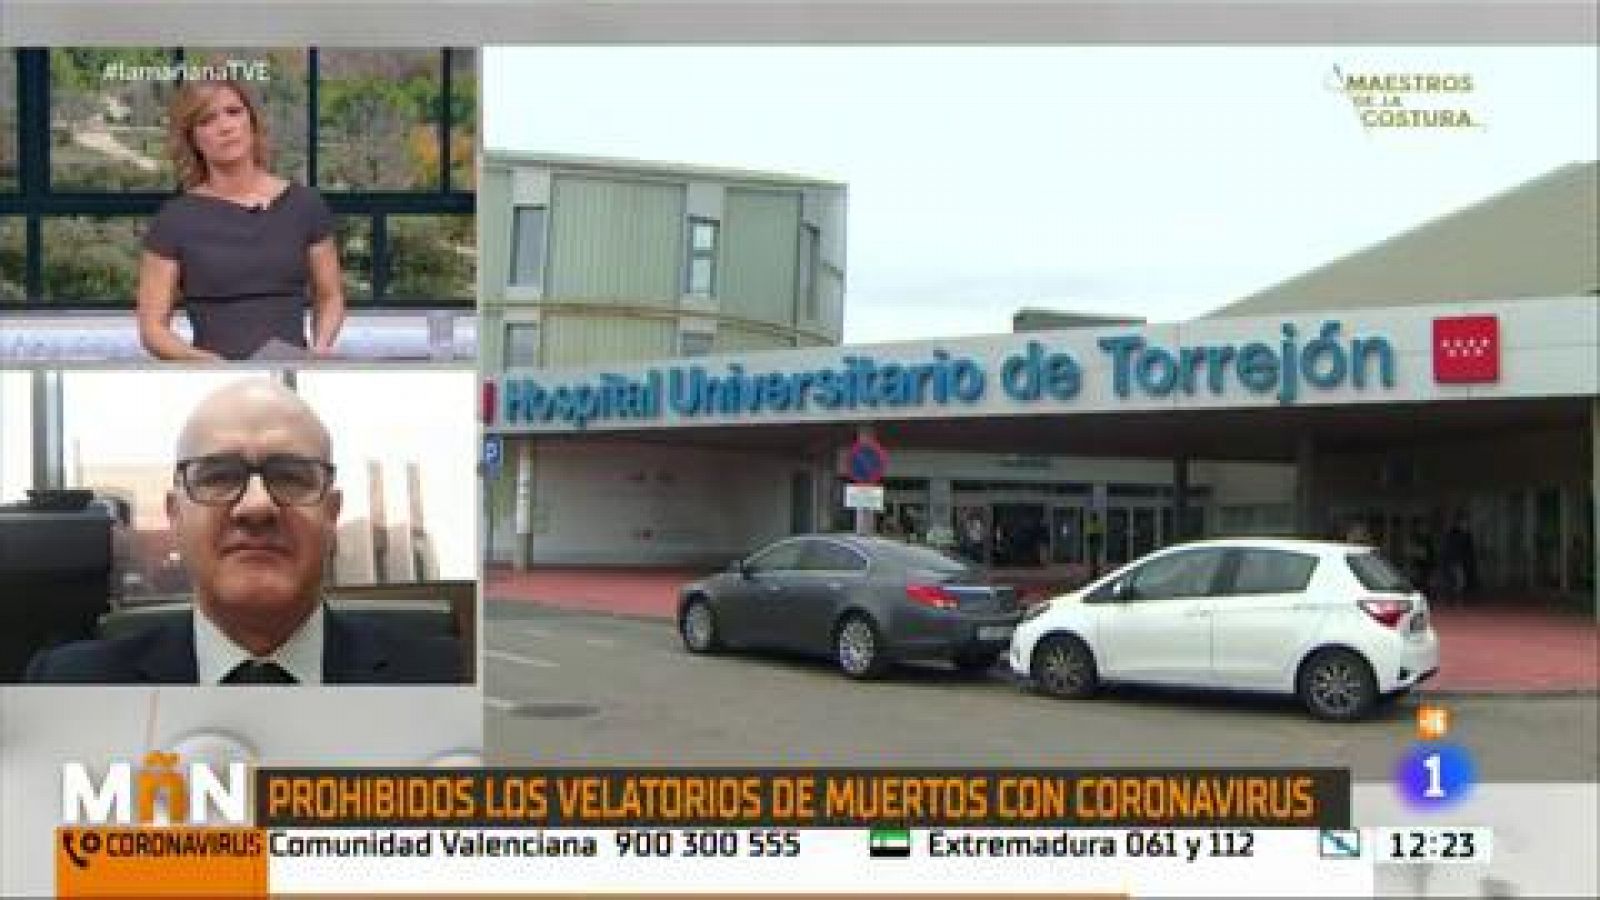 La Mañana - Un tanatorio de Zaragoza no oficiará misas ni velatorios de las personas fallecidas por el coronavirus